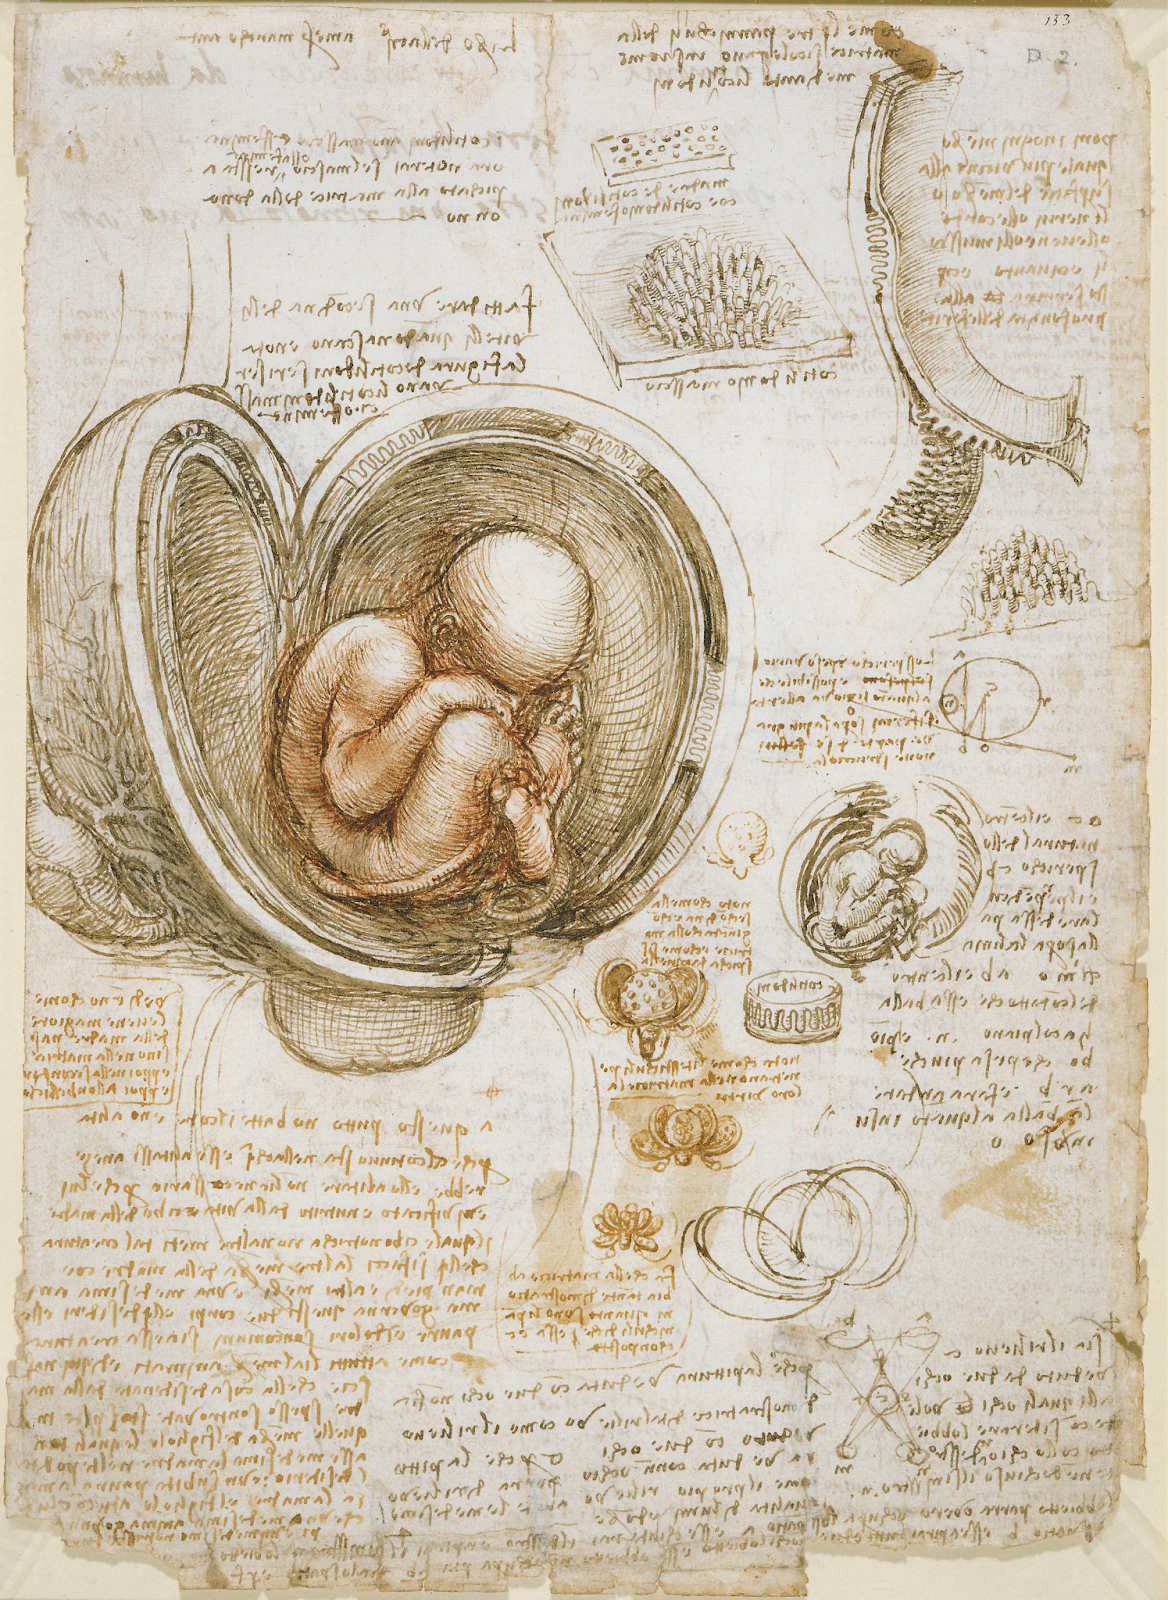 Estudo anatômico da gestação – Leonardo Da Vinci, cerca de 1511